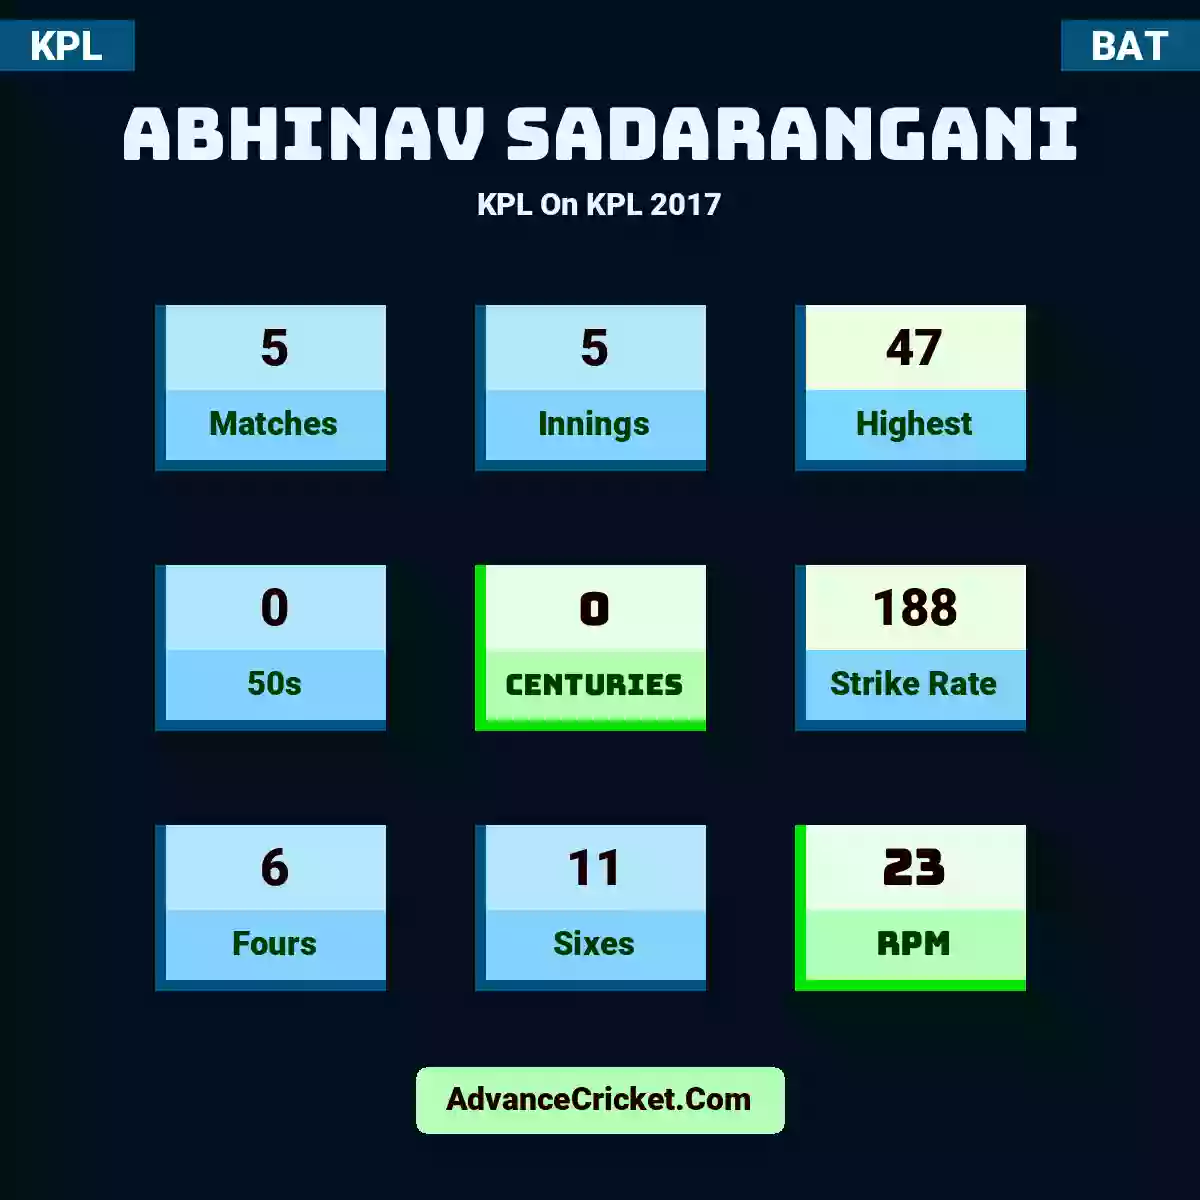 Abhinav Sadarangani KPL  On KPL 2017, Abhinav Sadarangani played 5 matches, scored 47 runs as highest, 0 half-centuries, and 0 centuries, with a strike rate of 188. A.Sadarangani hit 6 fours and 11 sixes, with an RPM of 23.